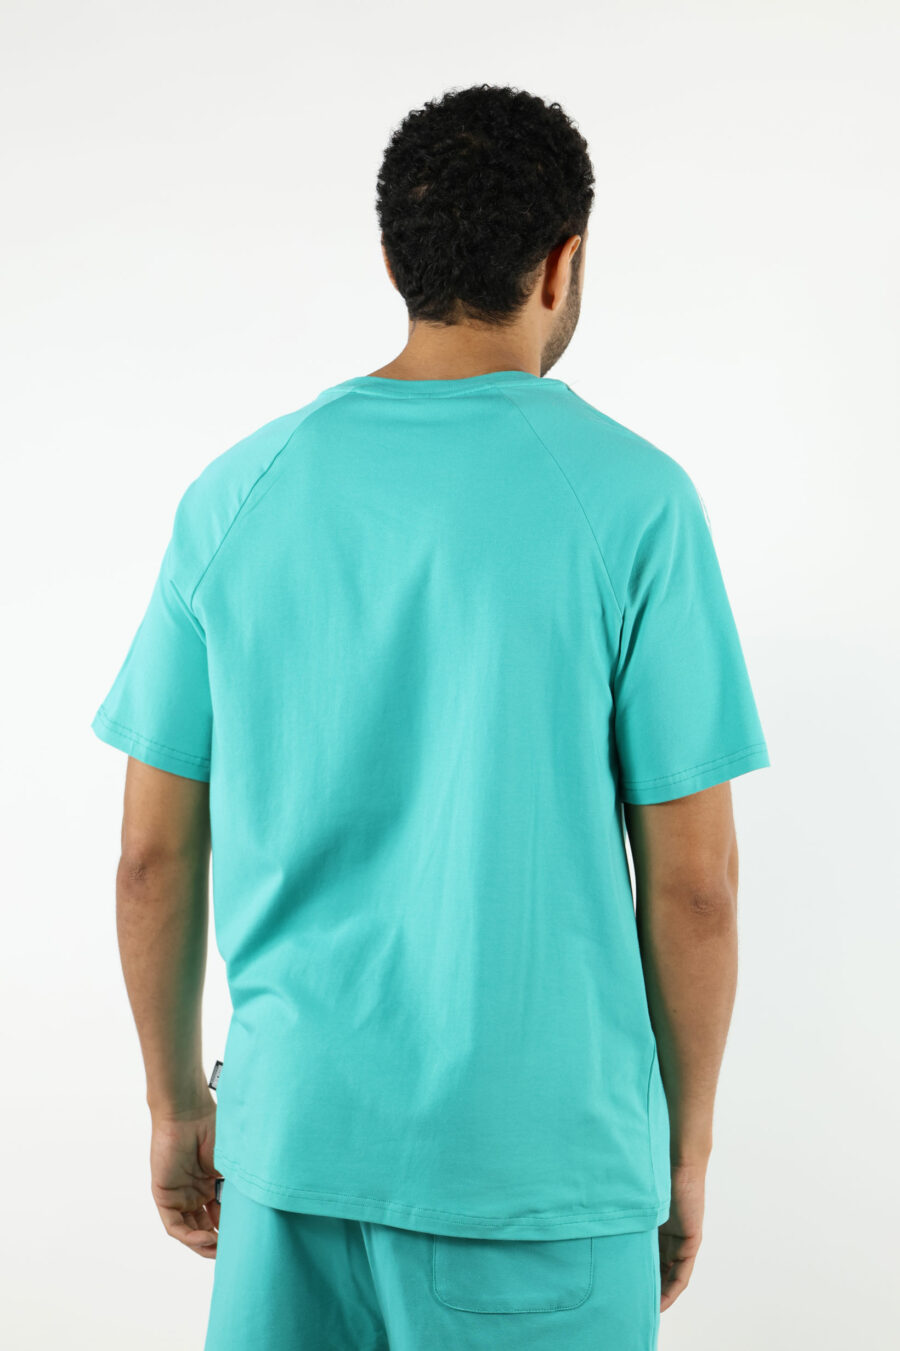 Camiseta azul aguamarina con logo oso "underbear" en cinta hombros - 111008